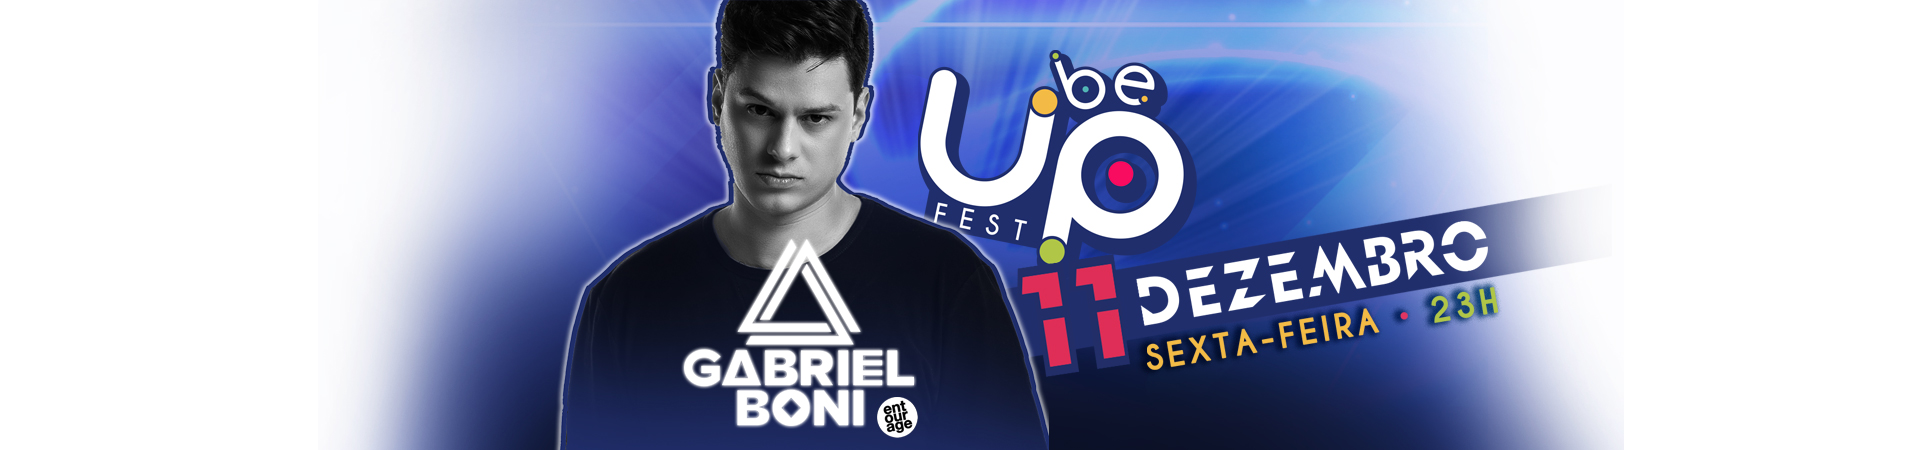 GABRIEL BONI | BE UP Fest • 11/dez